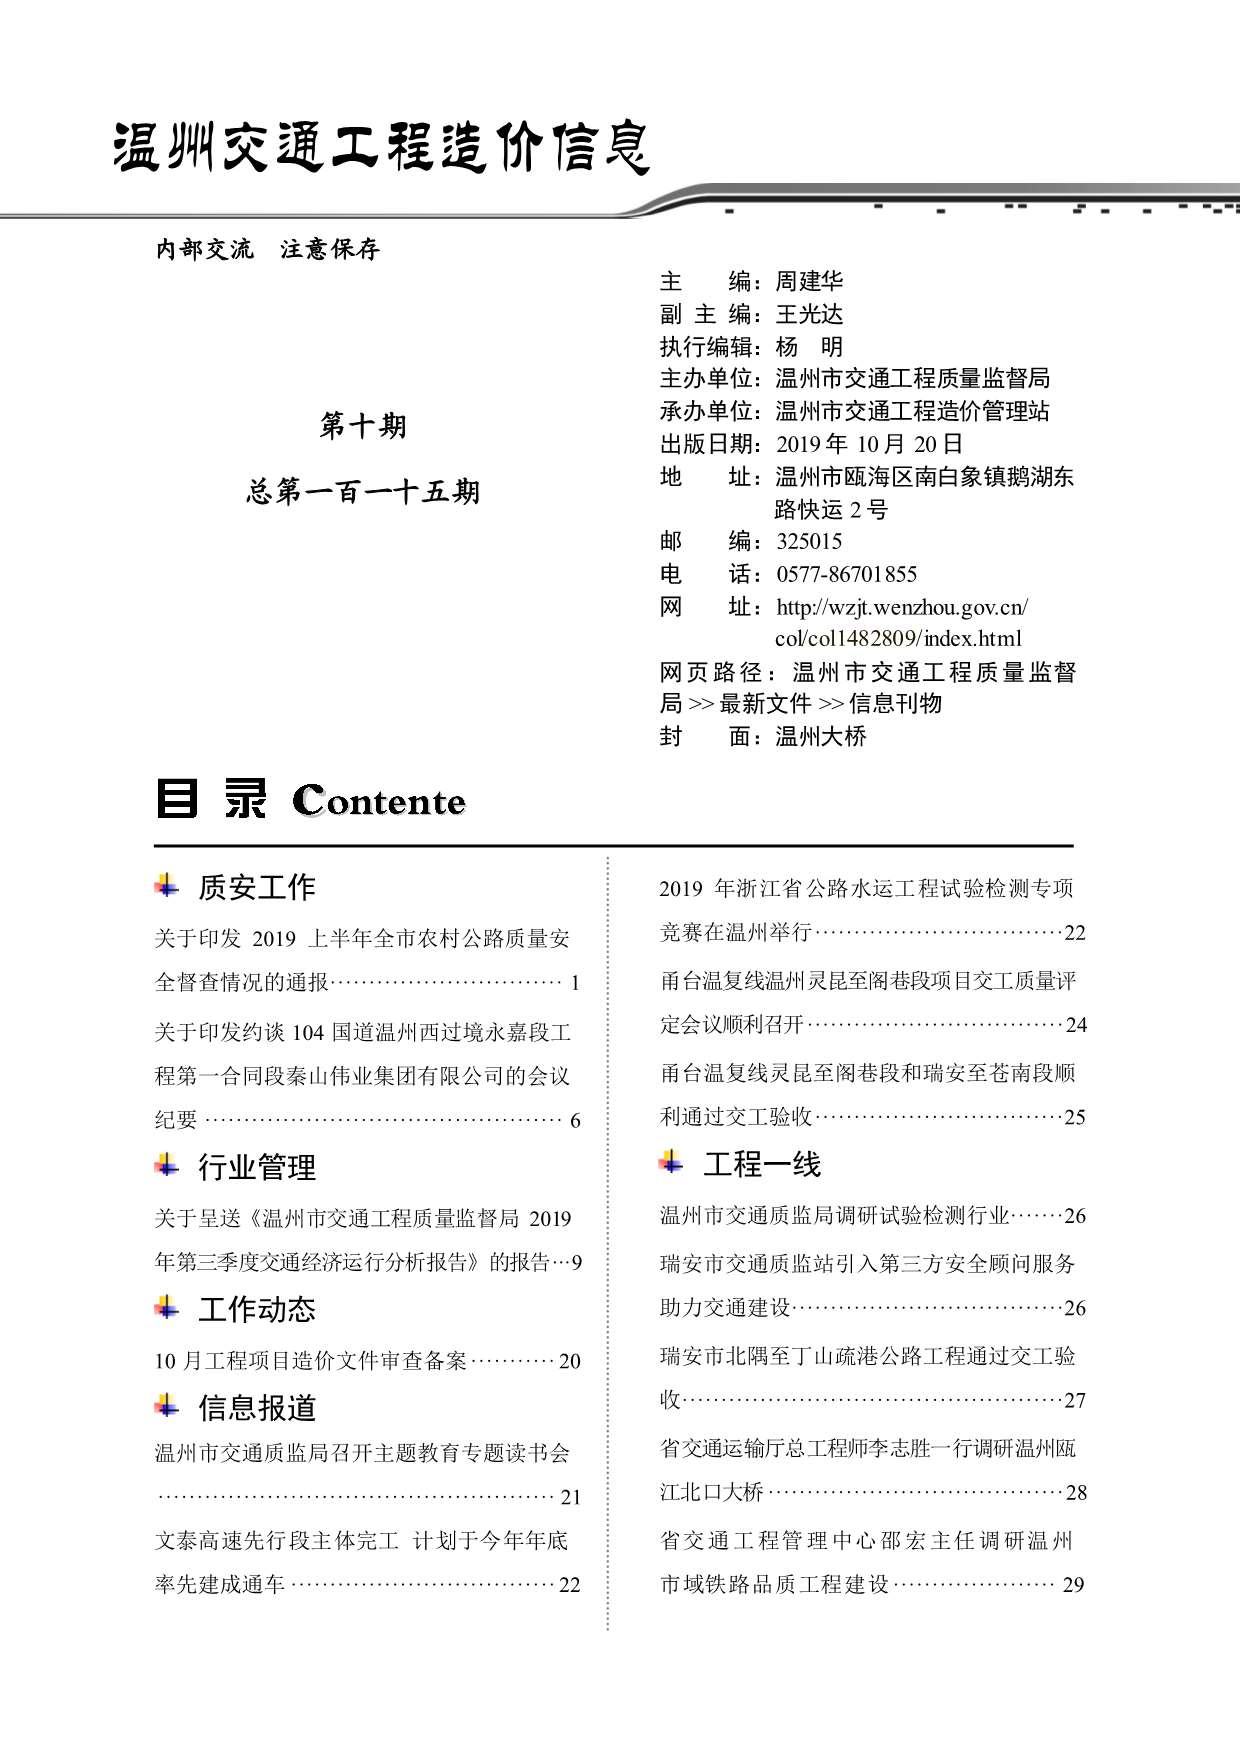 2019年10期温州交通信息价pdf扫描件